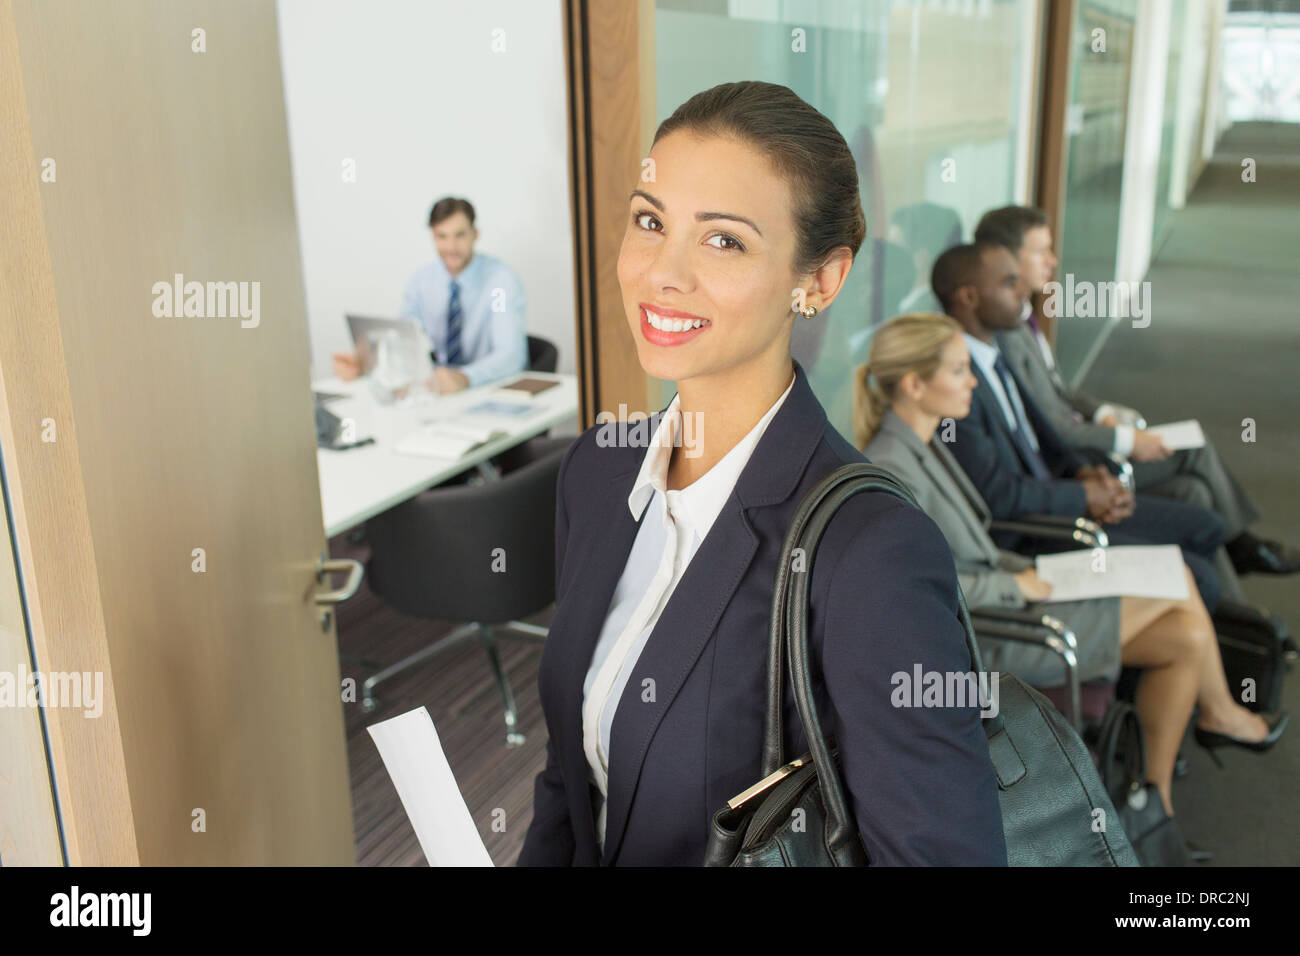 Businesswoman smiling in office doorway Stock Photo